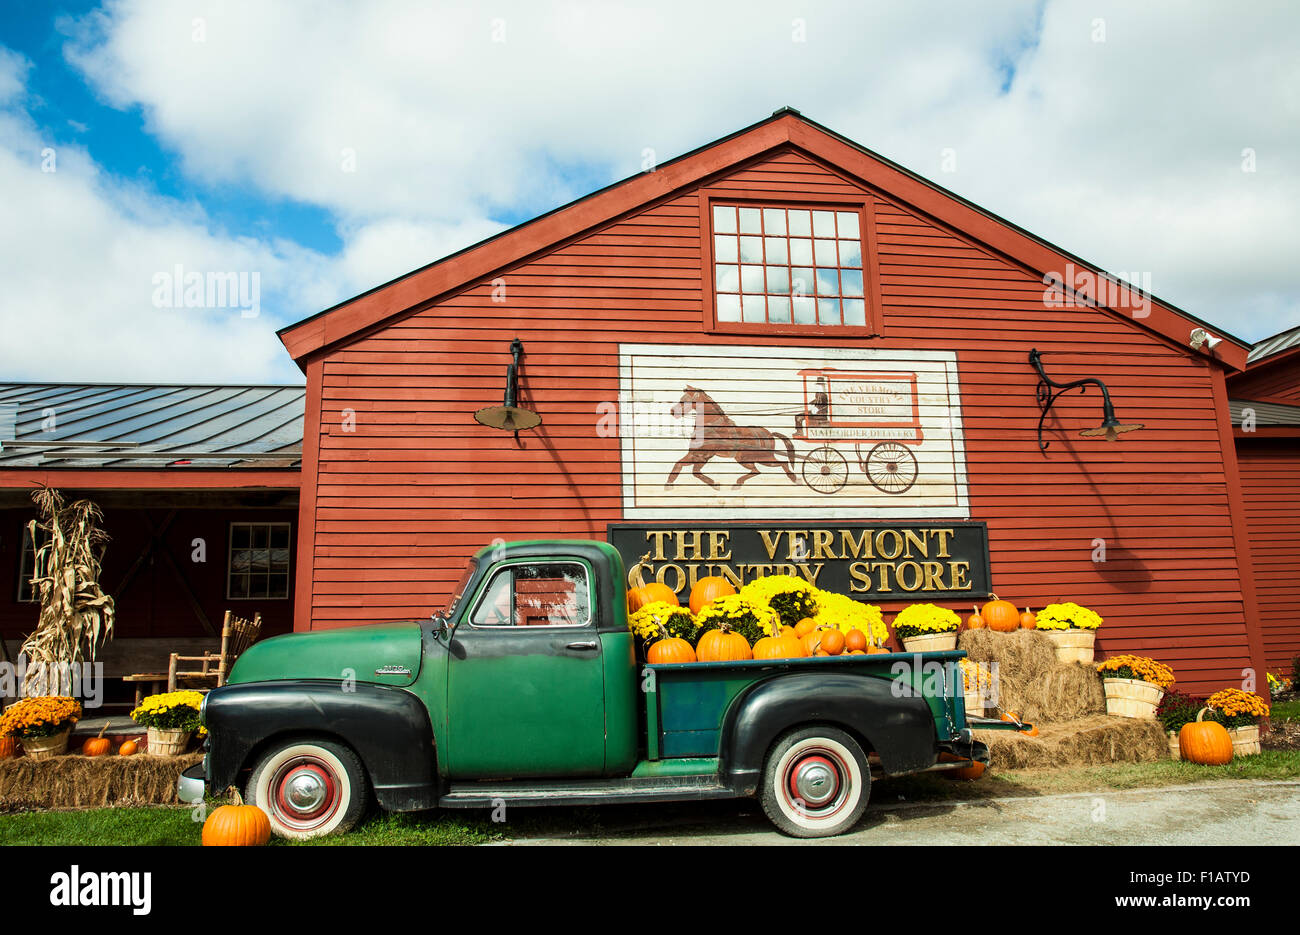 Farbenfrohe Kürbisse für den Herbst, Chrysanthemen, Pickup-Truck für Chevy im Vermont Country Store Okt 2014 Weston, Vermont, Fall New England, USA Stockfoto